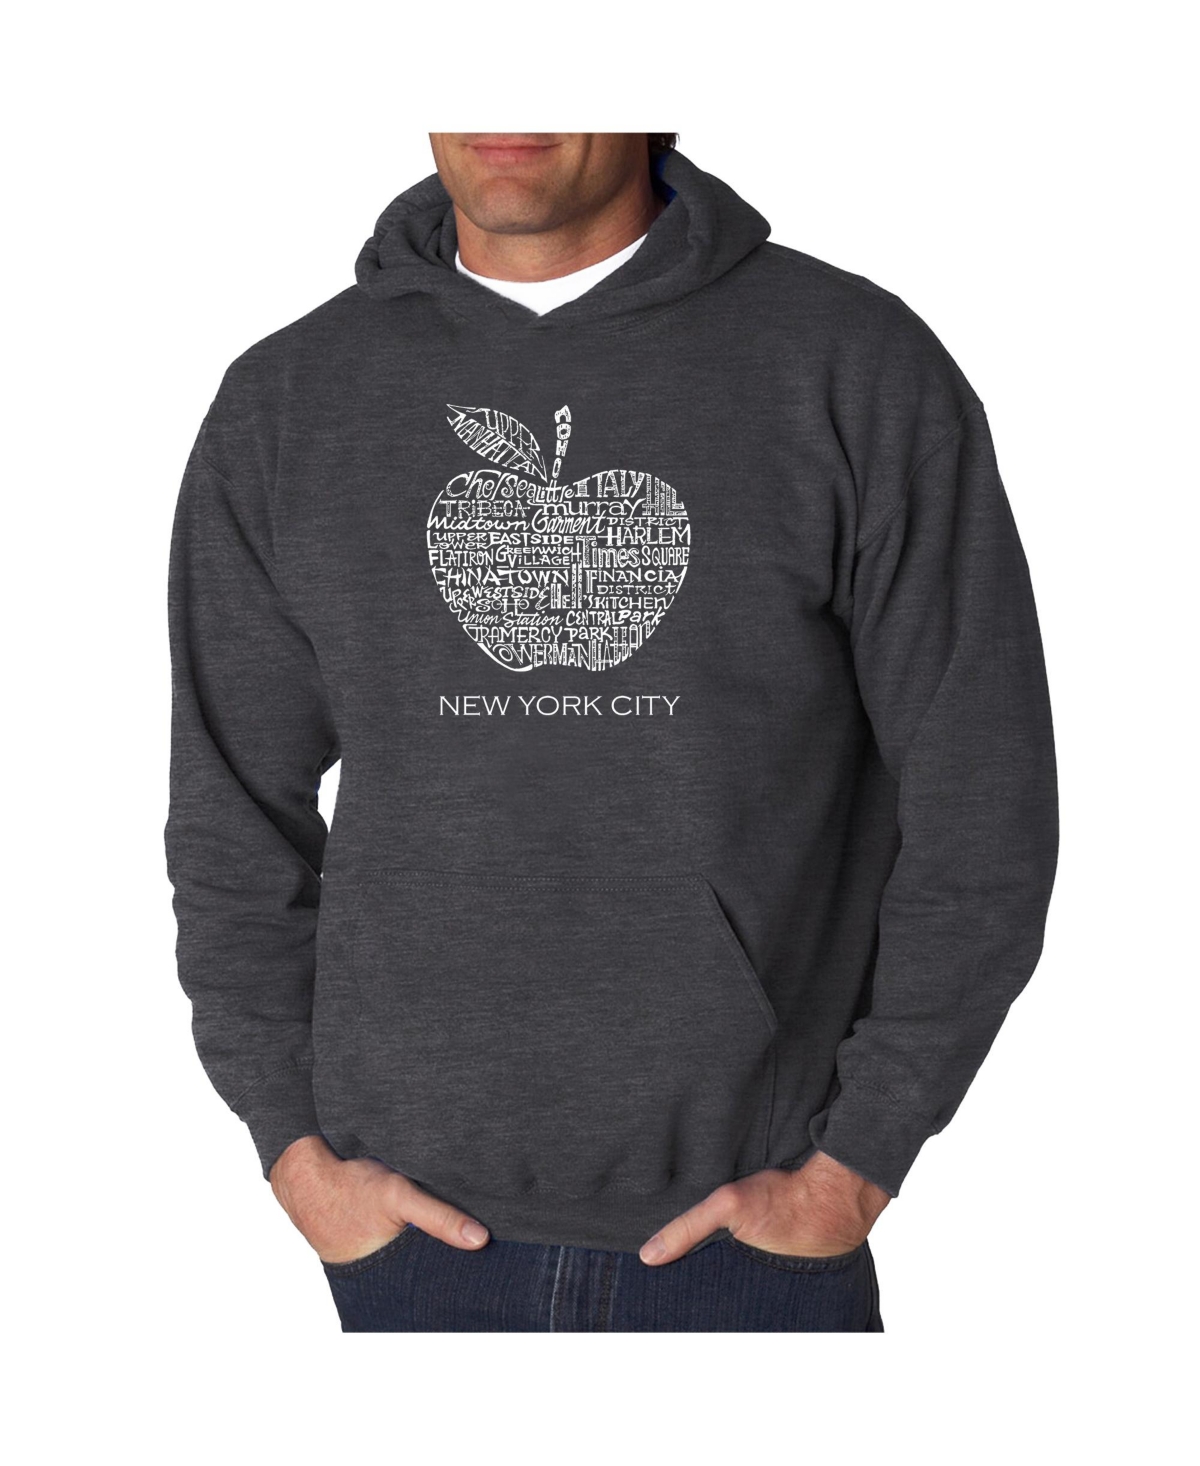 Men's Word Art Hooded Sweatshirt - Neighborhoods in Nyc - Dark Gray